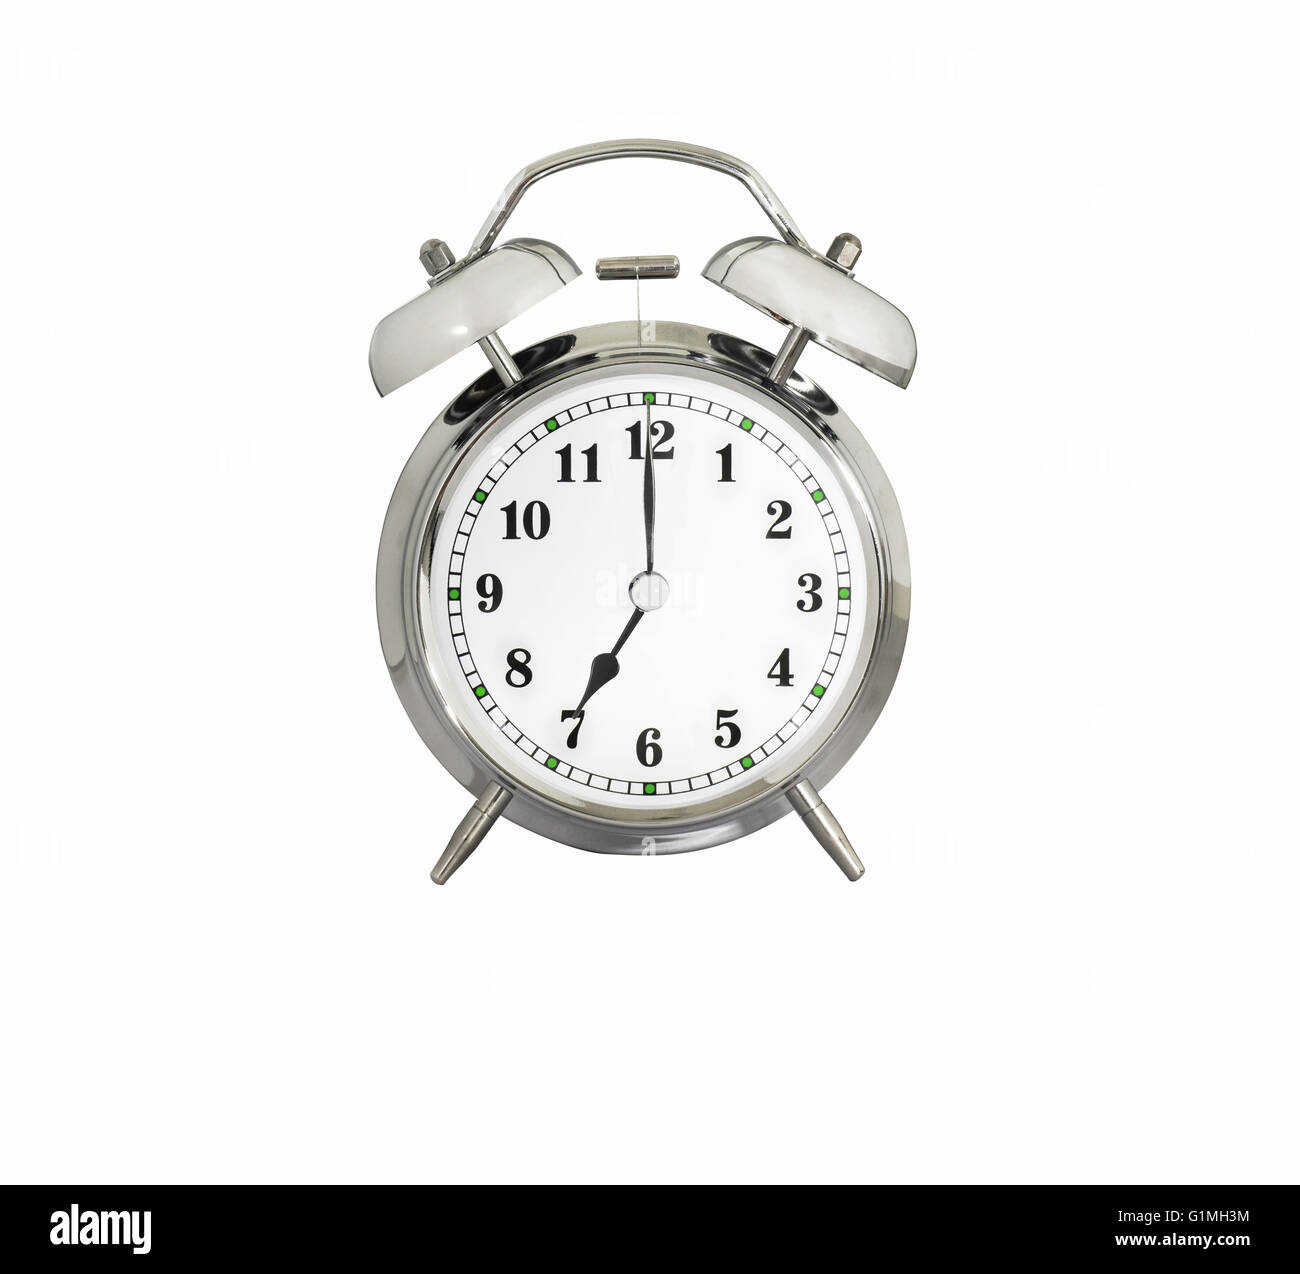 Tradizionale Orologio sveglia che mostra 7:00 Foto stock - Alamy